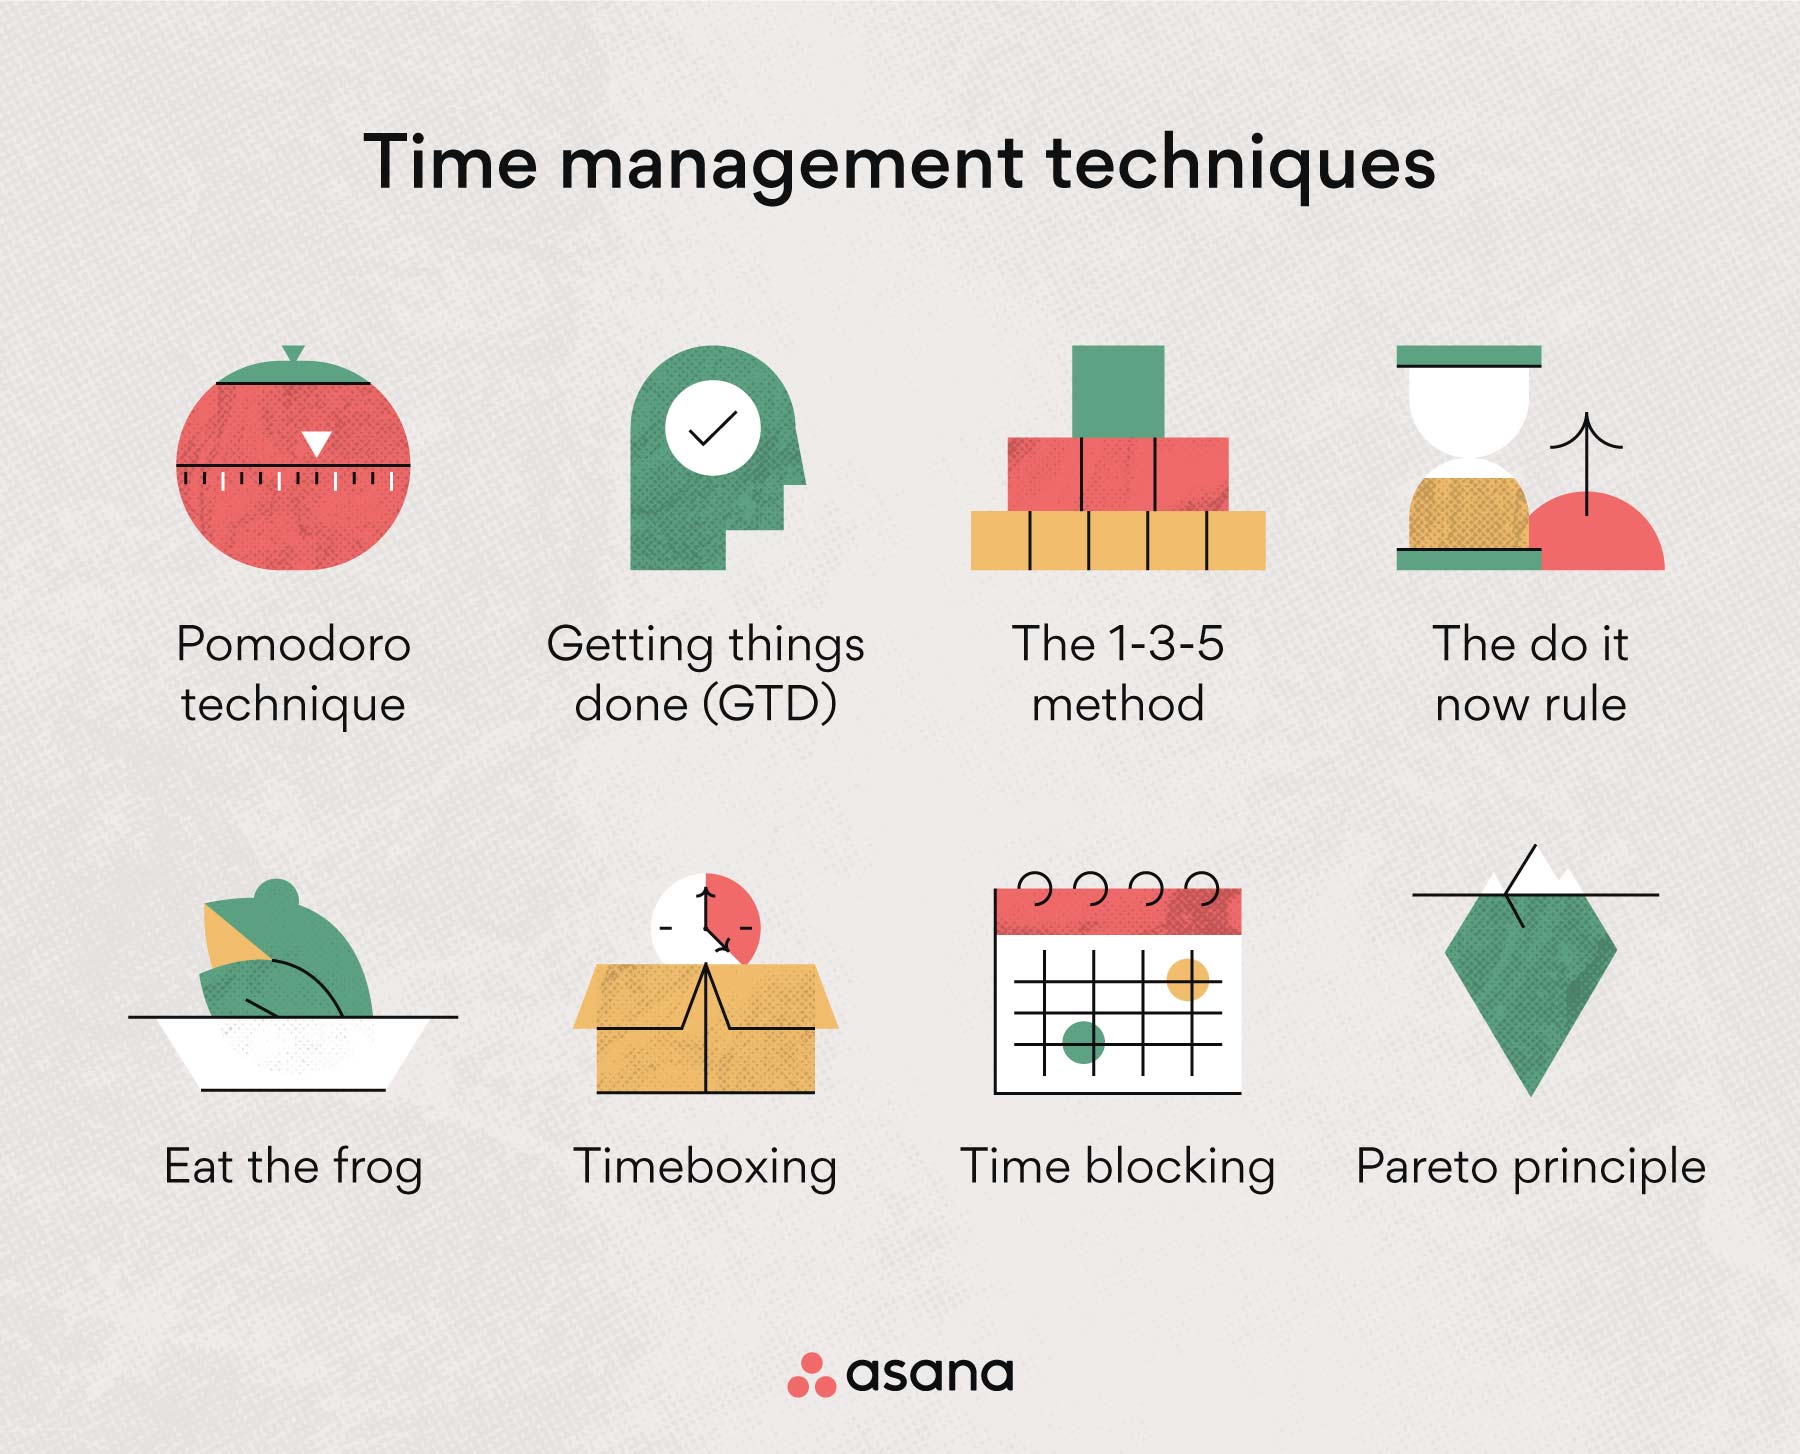 Time management techniques